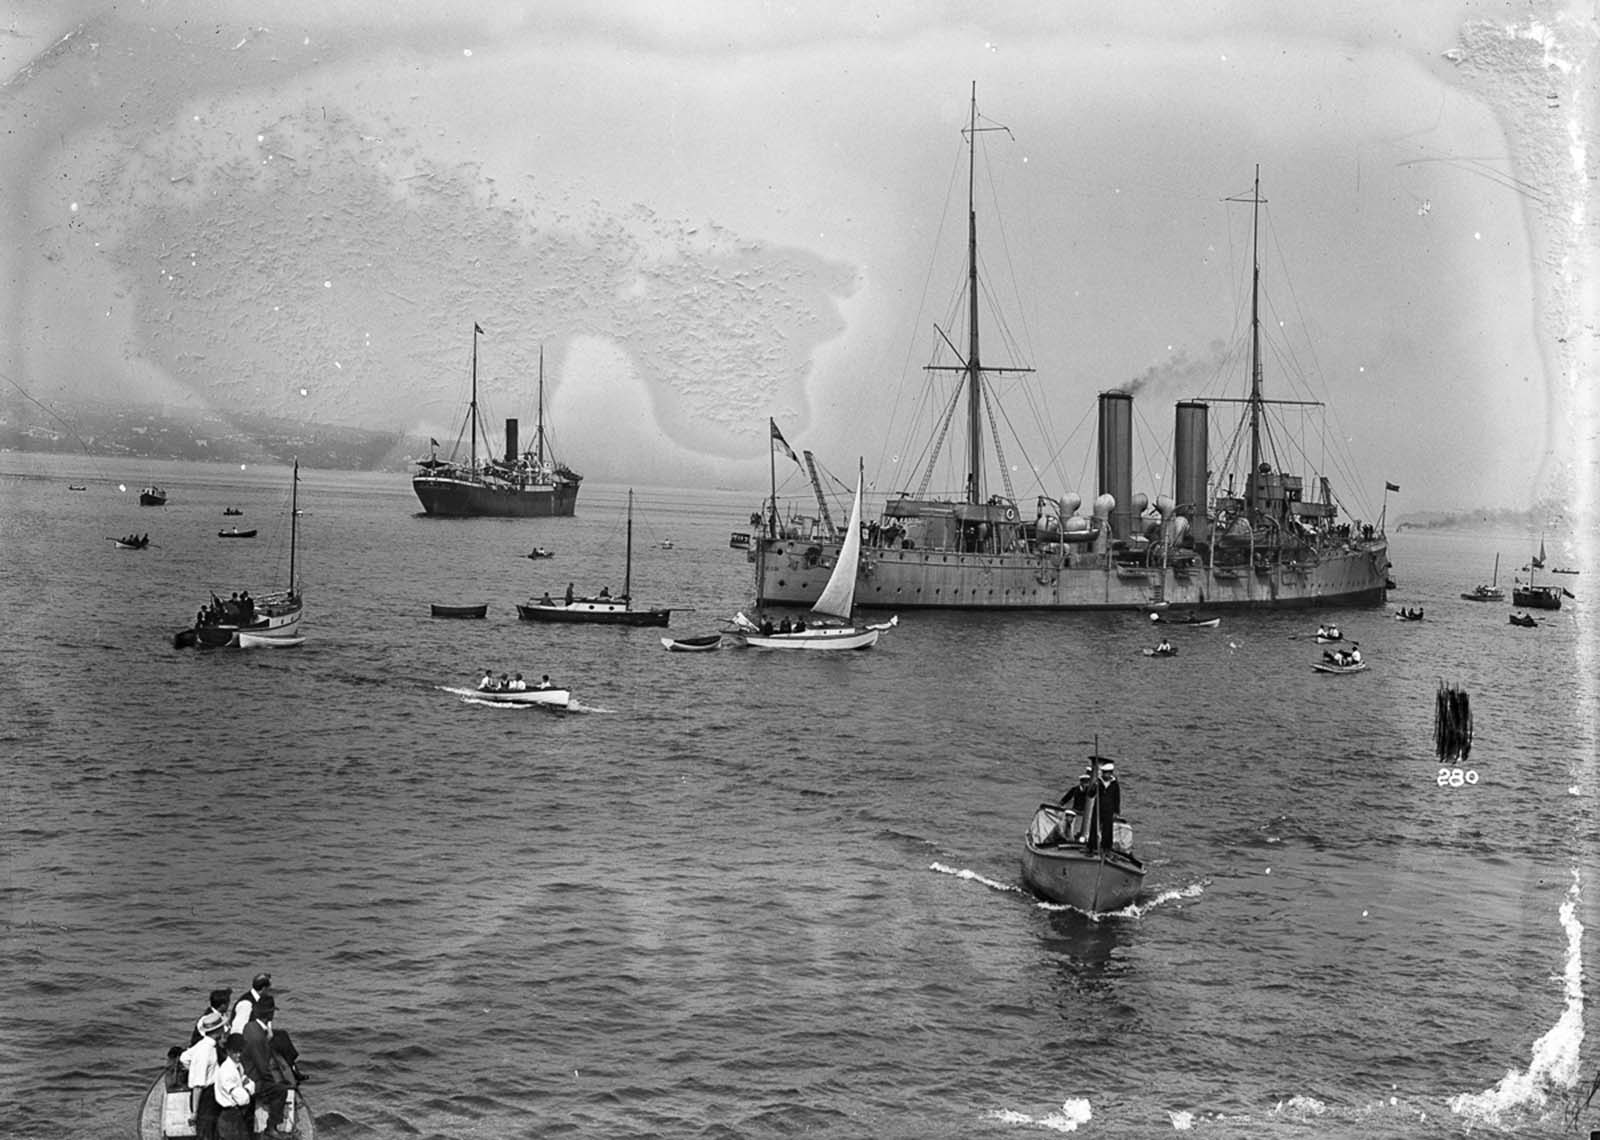 L'incident du Komagata Maru qui a contesté les lois canadiennes sur l'immigration, 1914